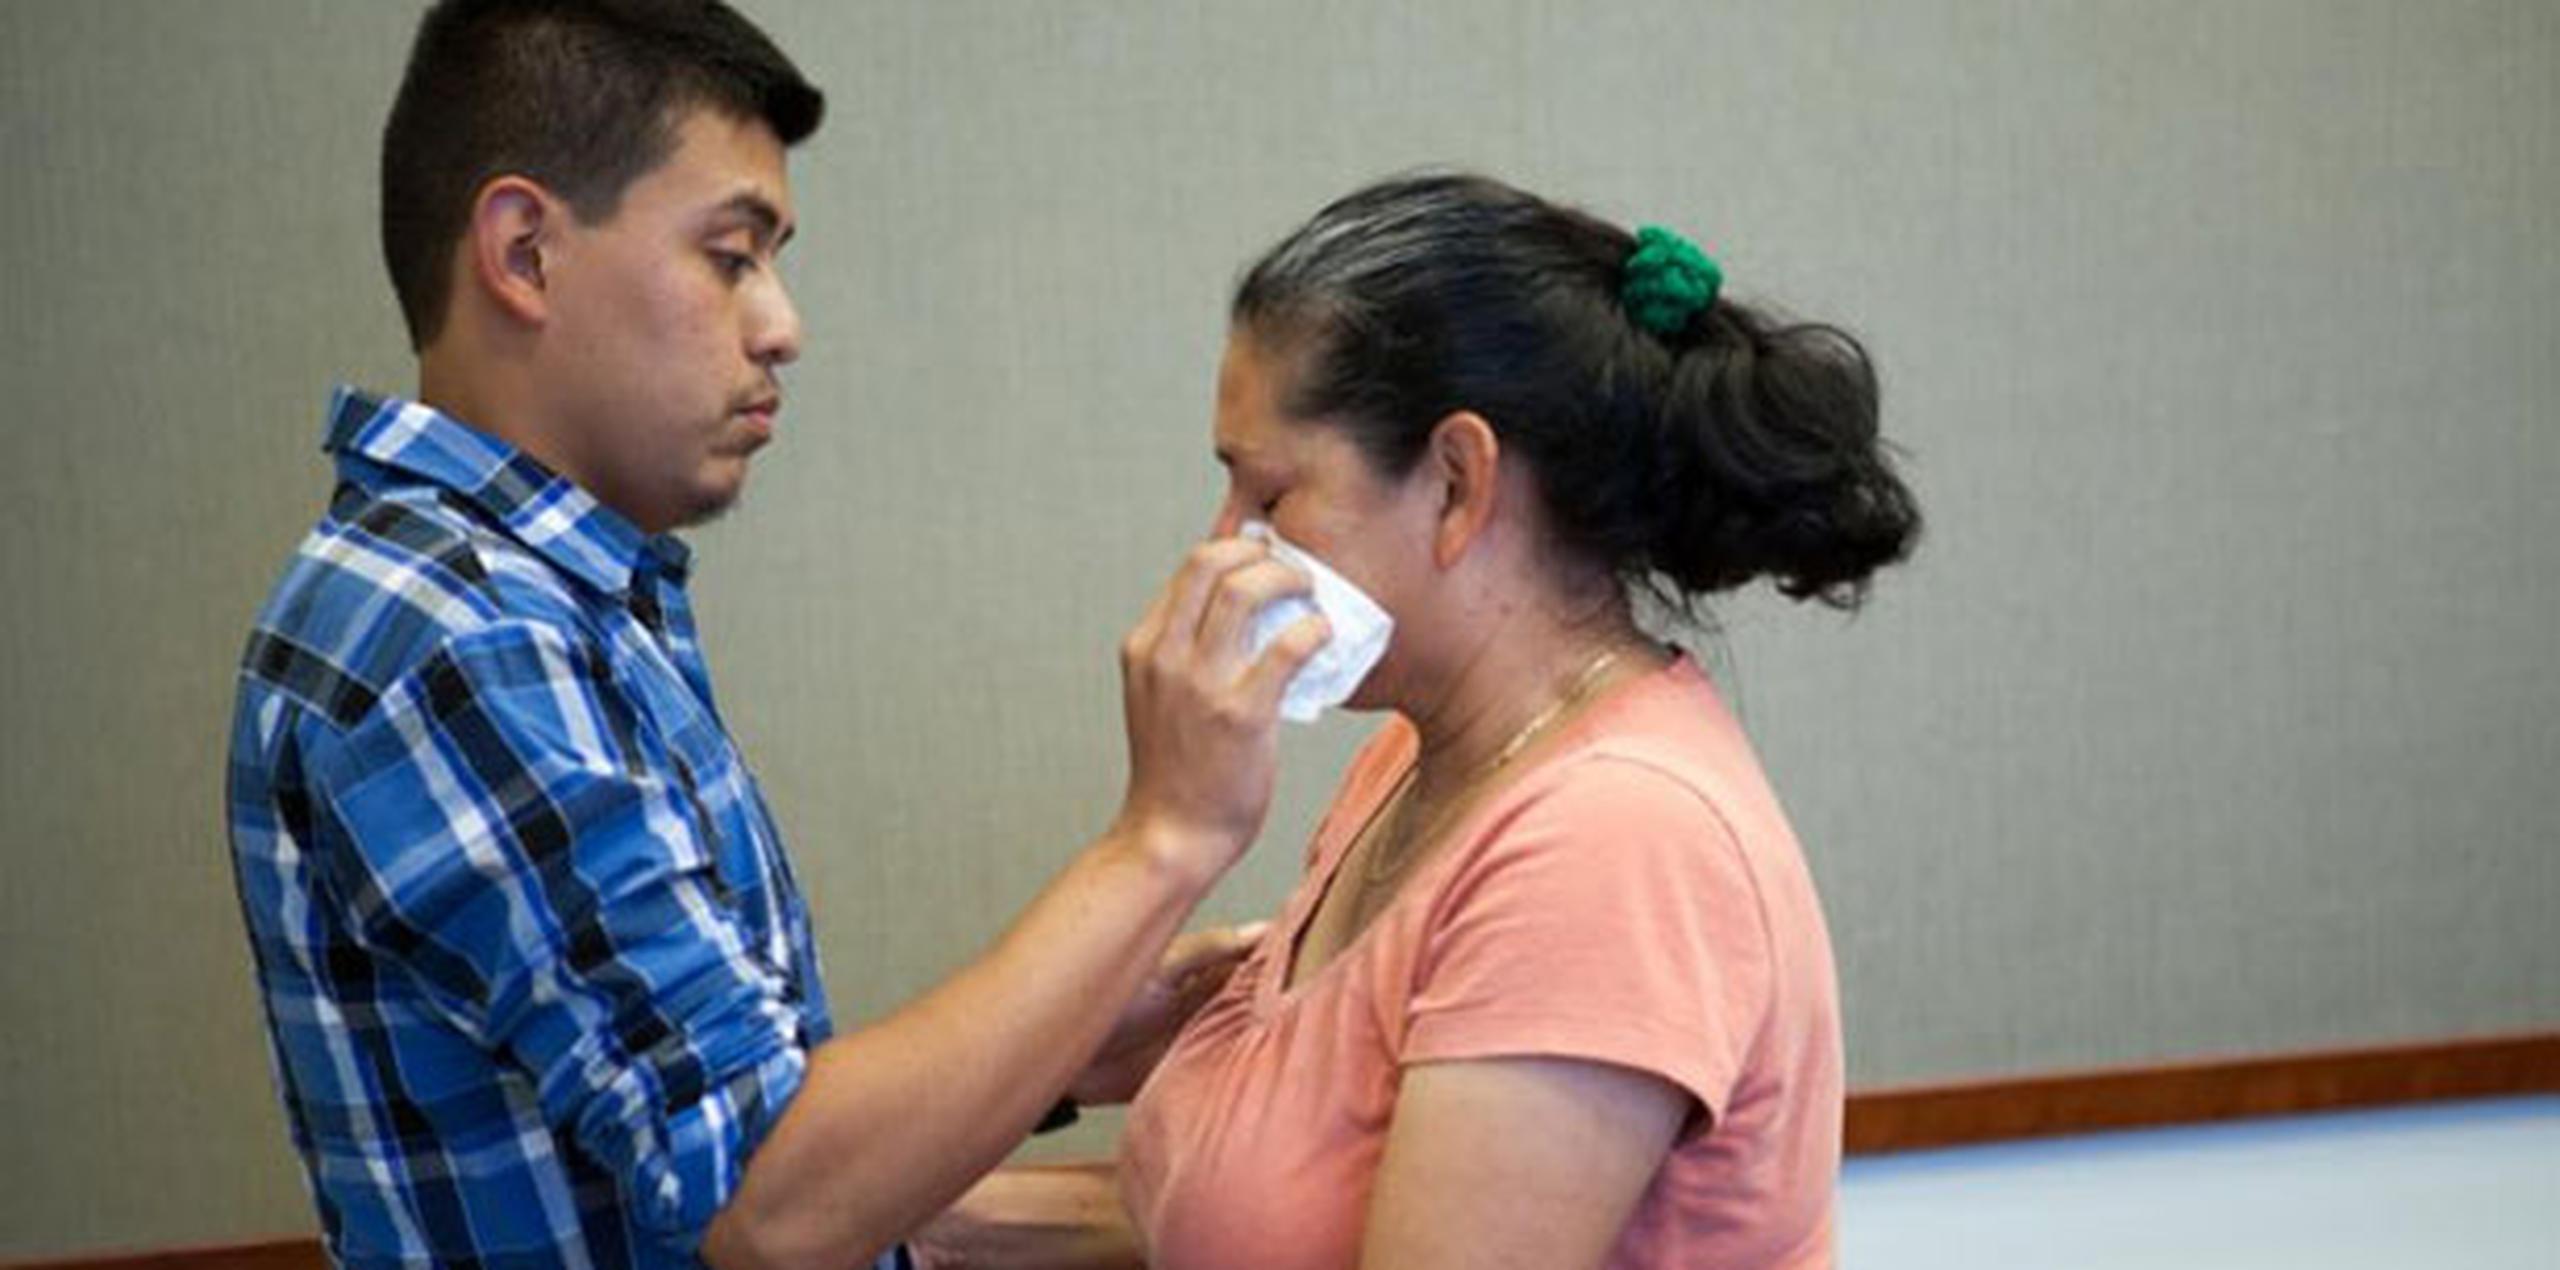 Una foto de la reunión muestra a Hernandez secando una lágrima de los ojos de su madre. (AP)